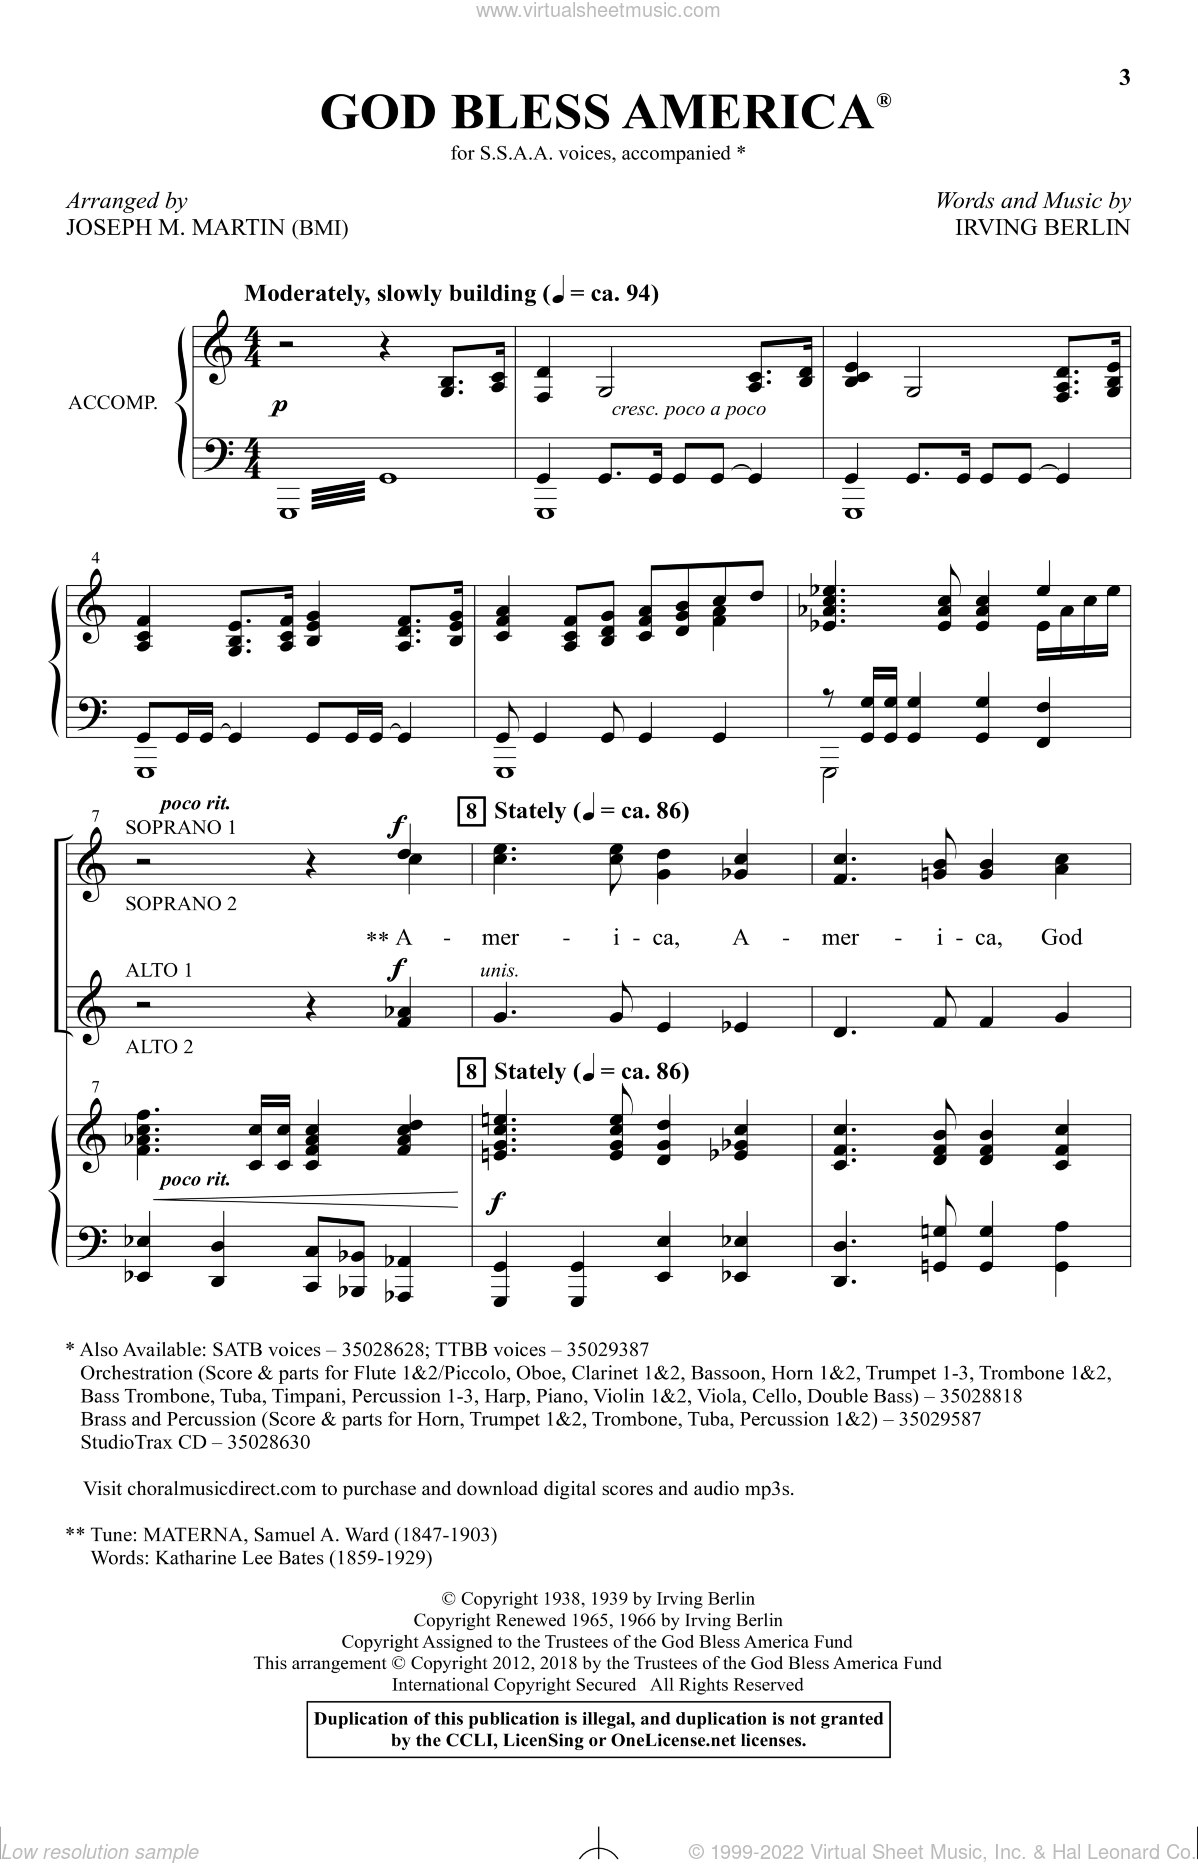 God Bless America arr Joseph M Martin Sheet Music For Choir SSAA Soprano Alto 